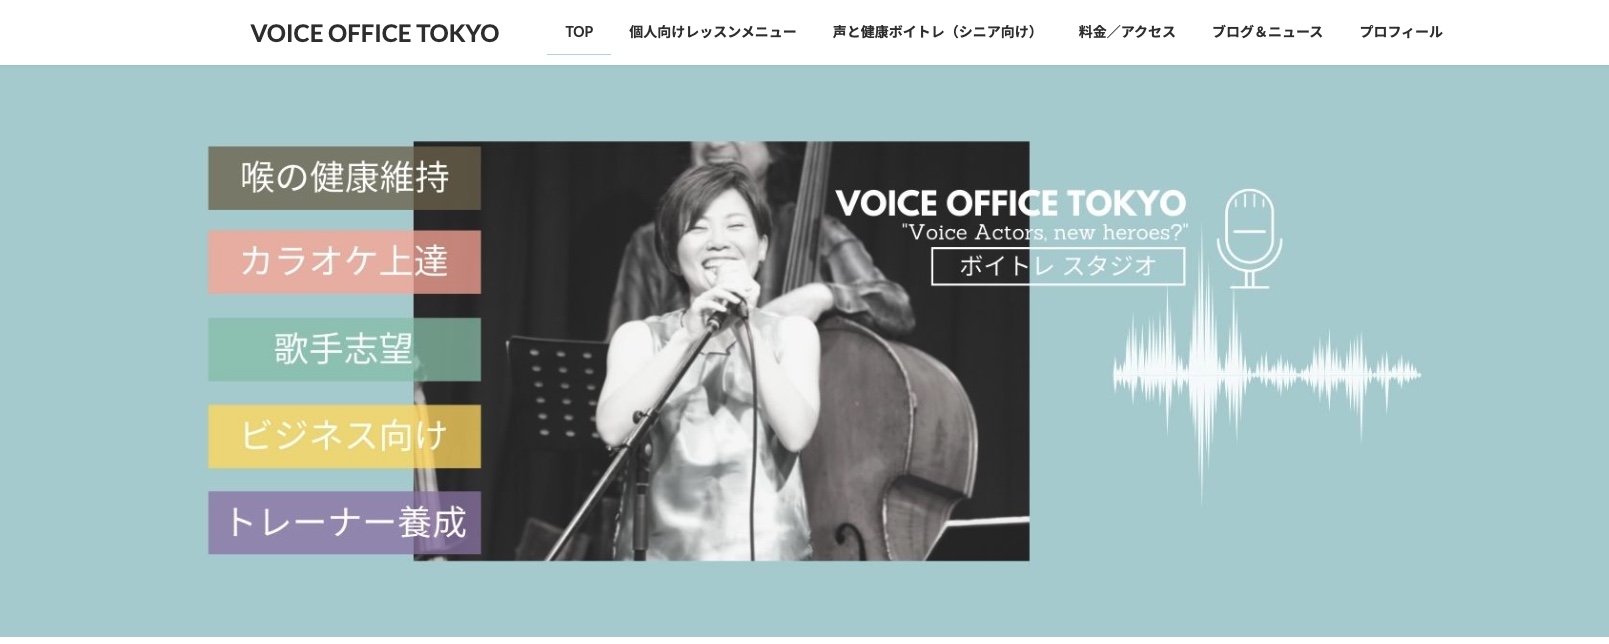 VOICE OFFICE TOKYO